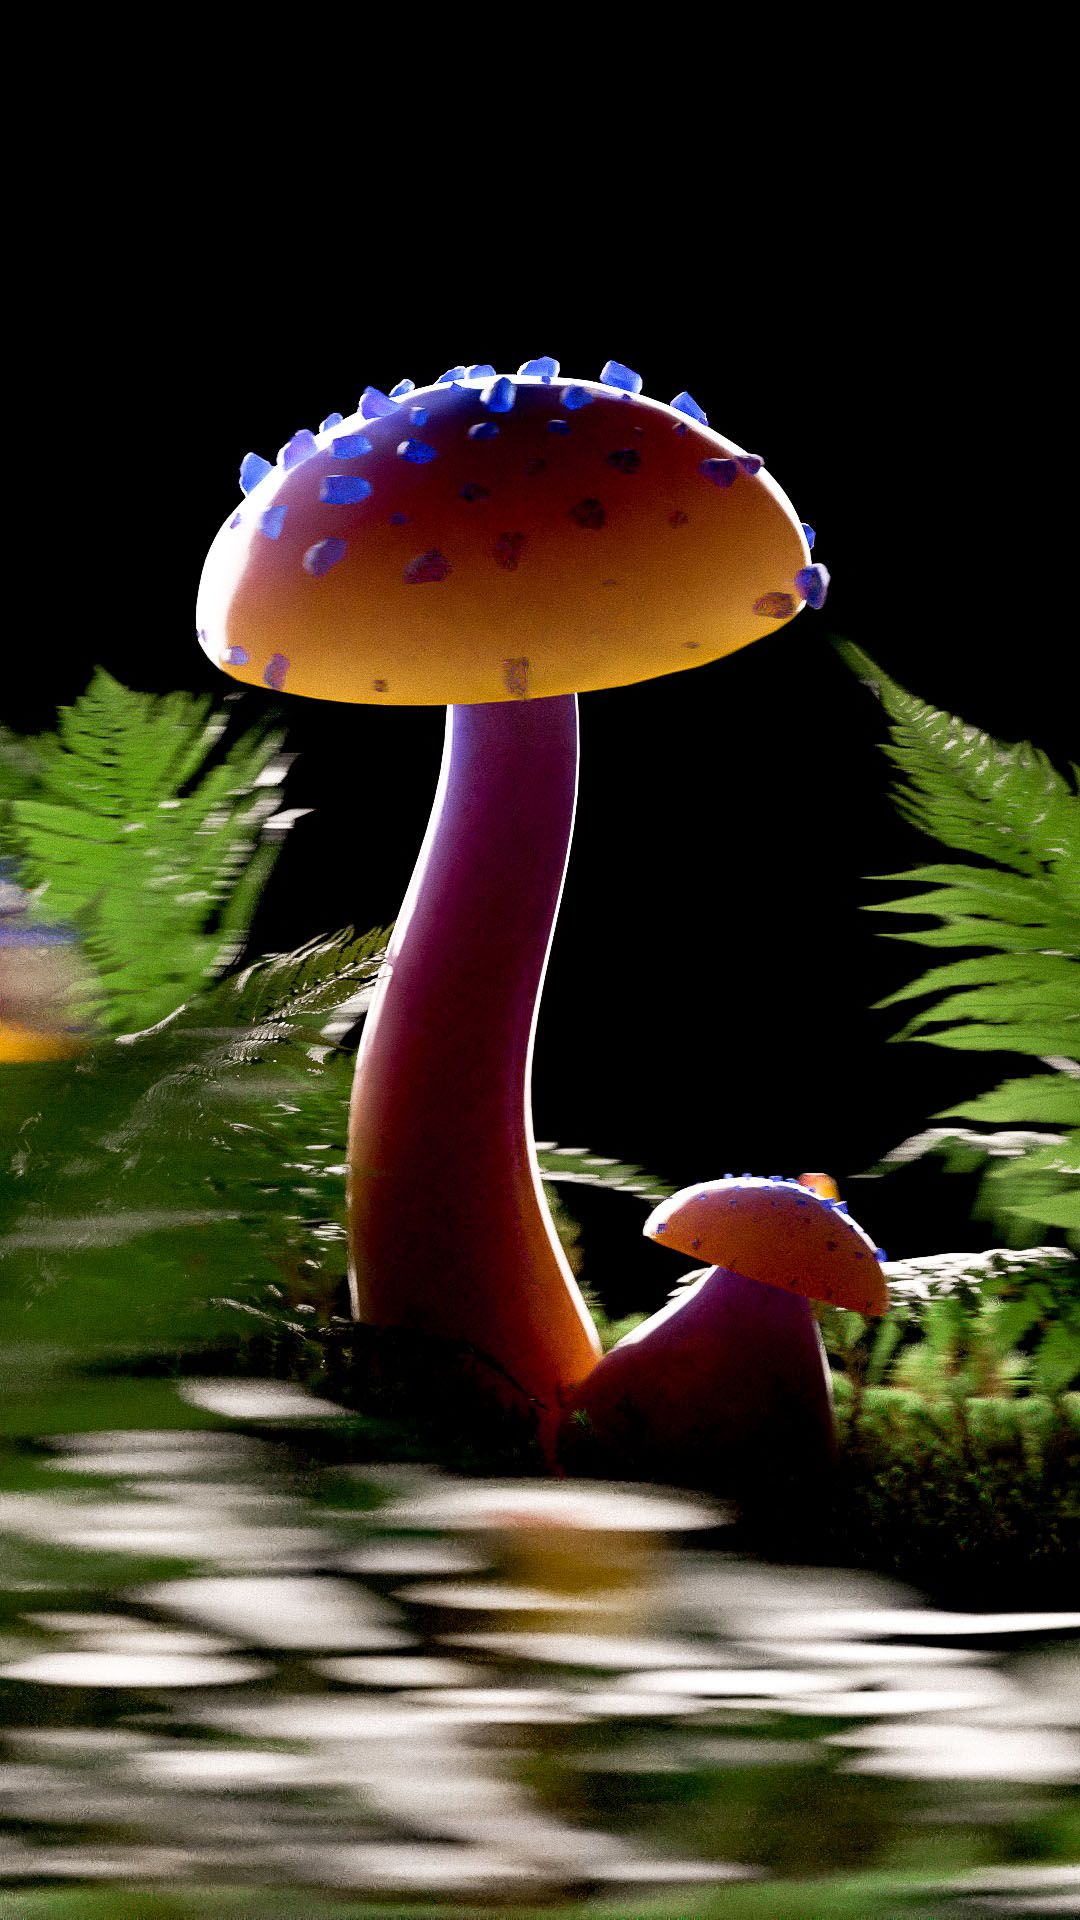 Andrea-Philippon-Fungi-Fantasia_05